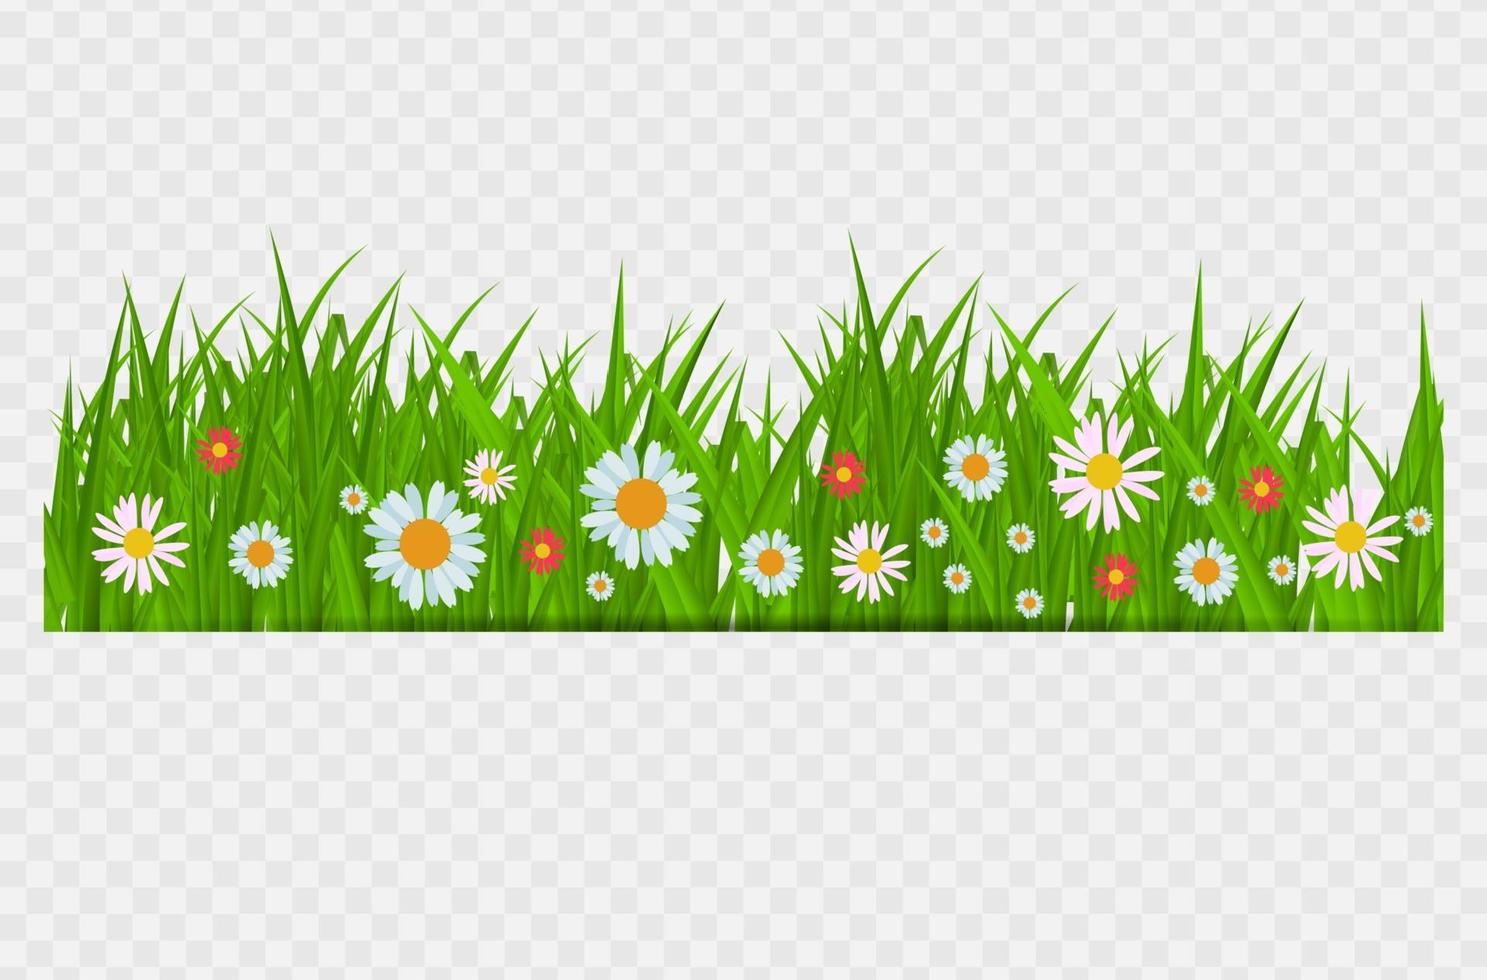 Brighgrass und Blumengrenze, Grußkartendekorationselement für Ostern auf einem transparenten Hintergrund. Vektor-Illustration saftiges grünes Gras auf einem transparenten Hintergrund. Vektor-Illustration. vektor